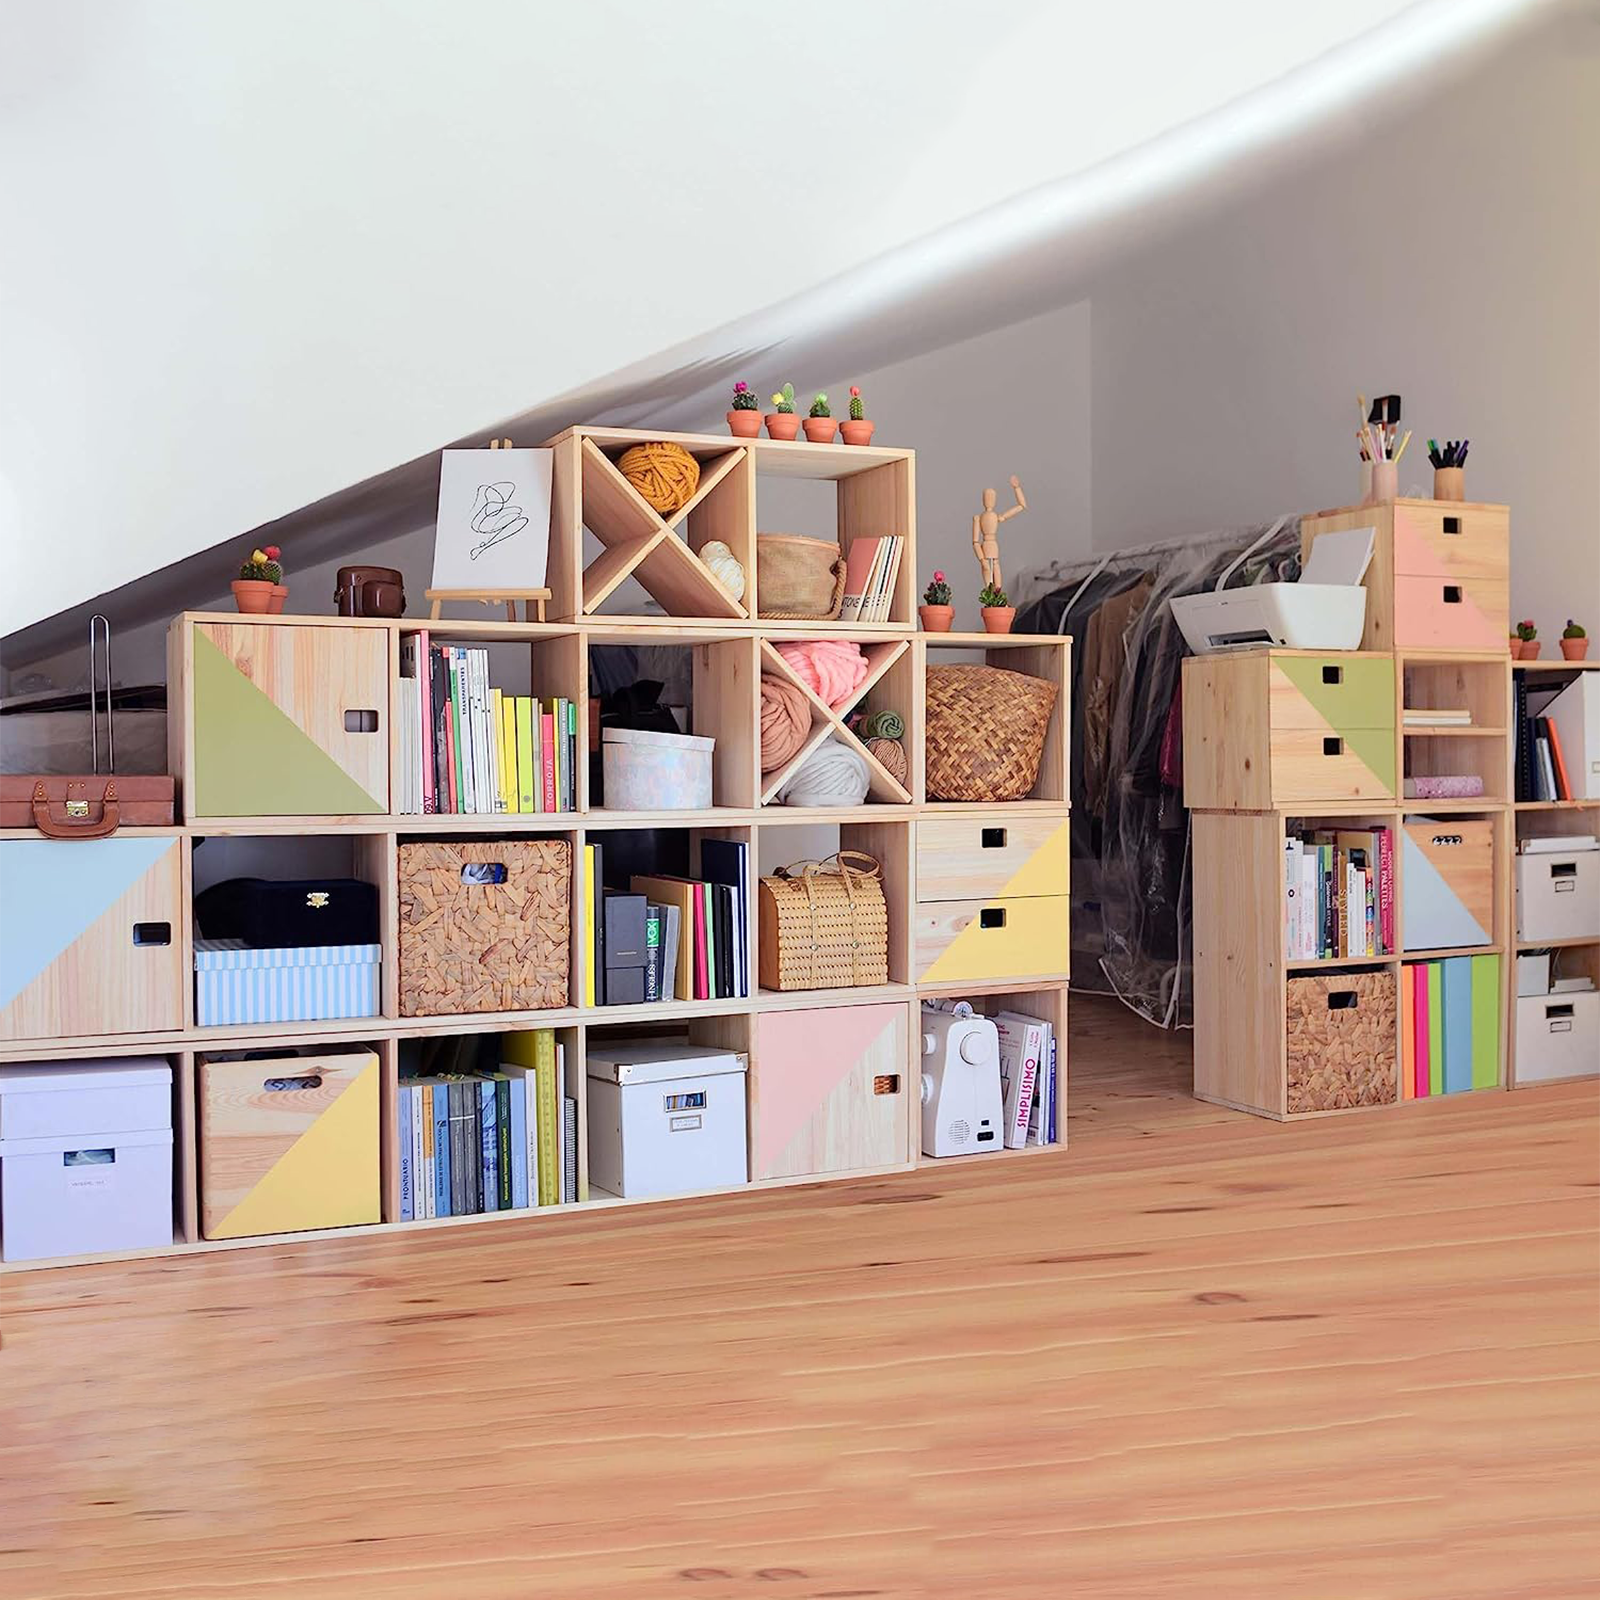 Libreria componibile in legno Cubo scaffale modulare da muro con vani a giorno